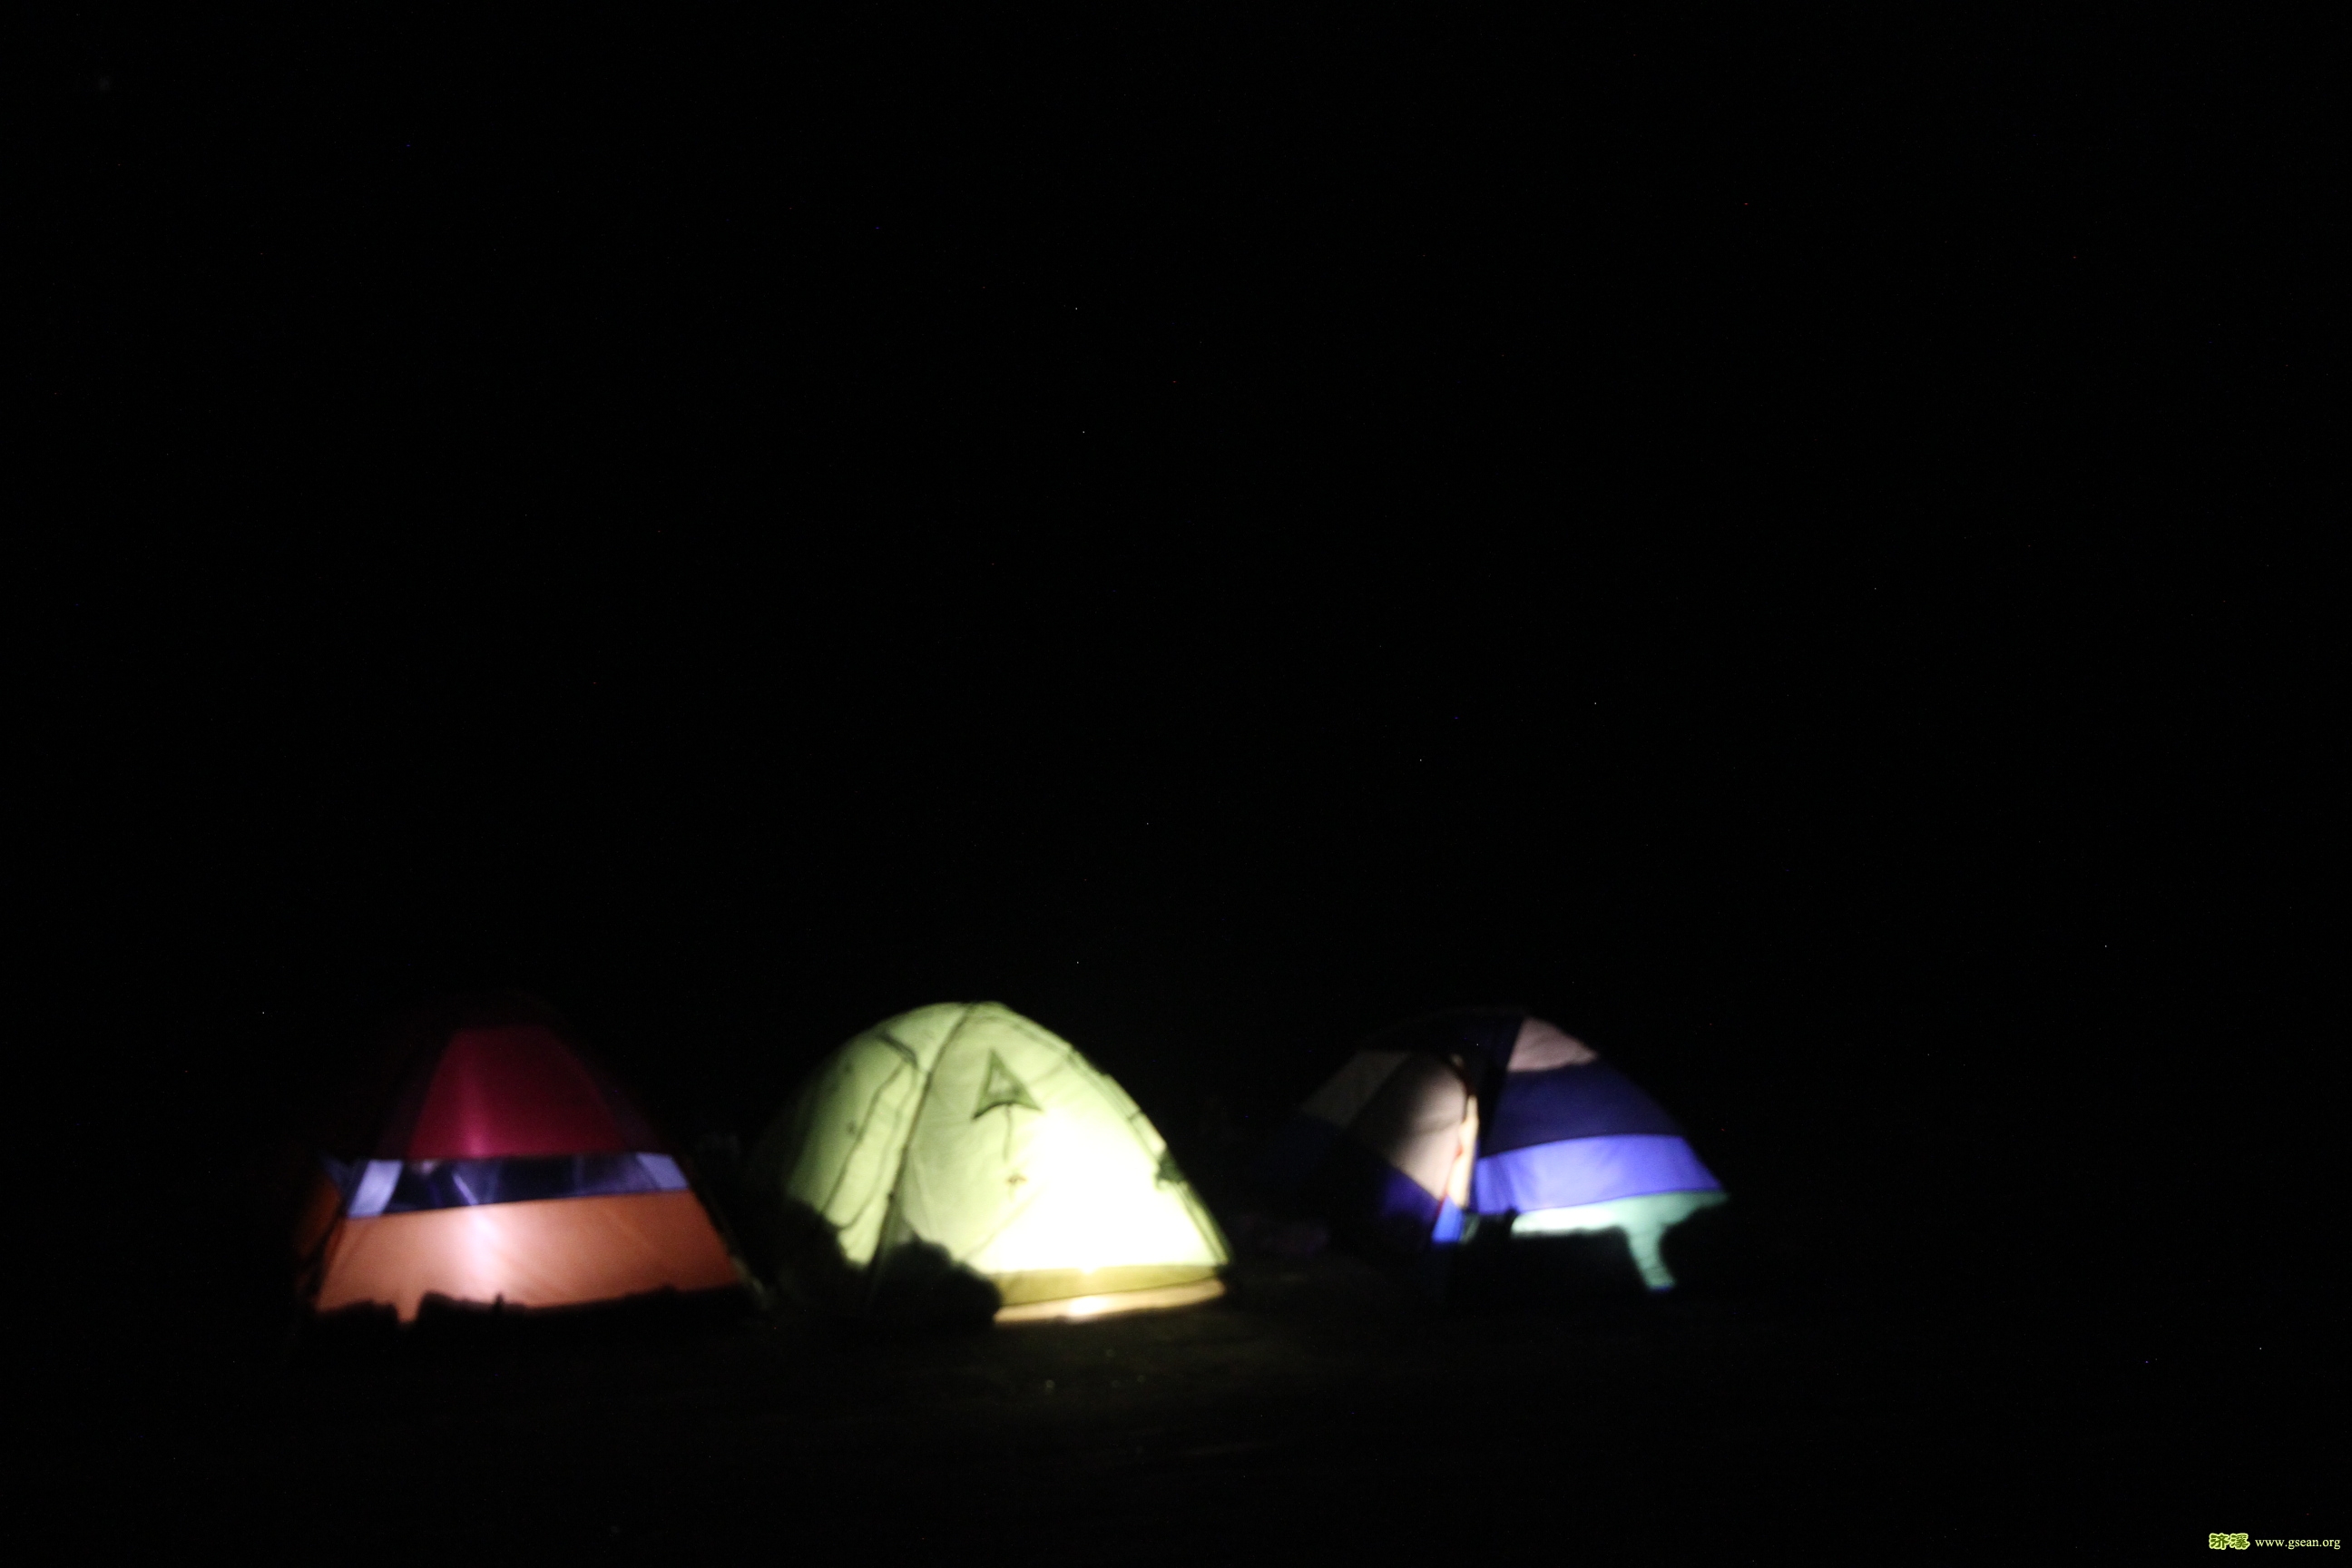 到得比较迟，安营扎寨，亮起灯的帐篷在冬夜里感觉很温暖。